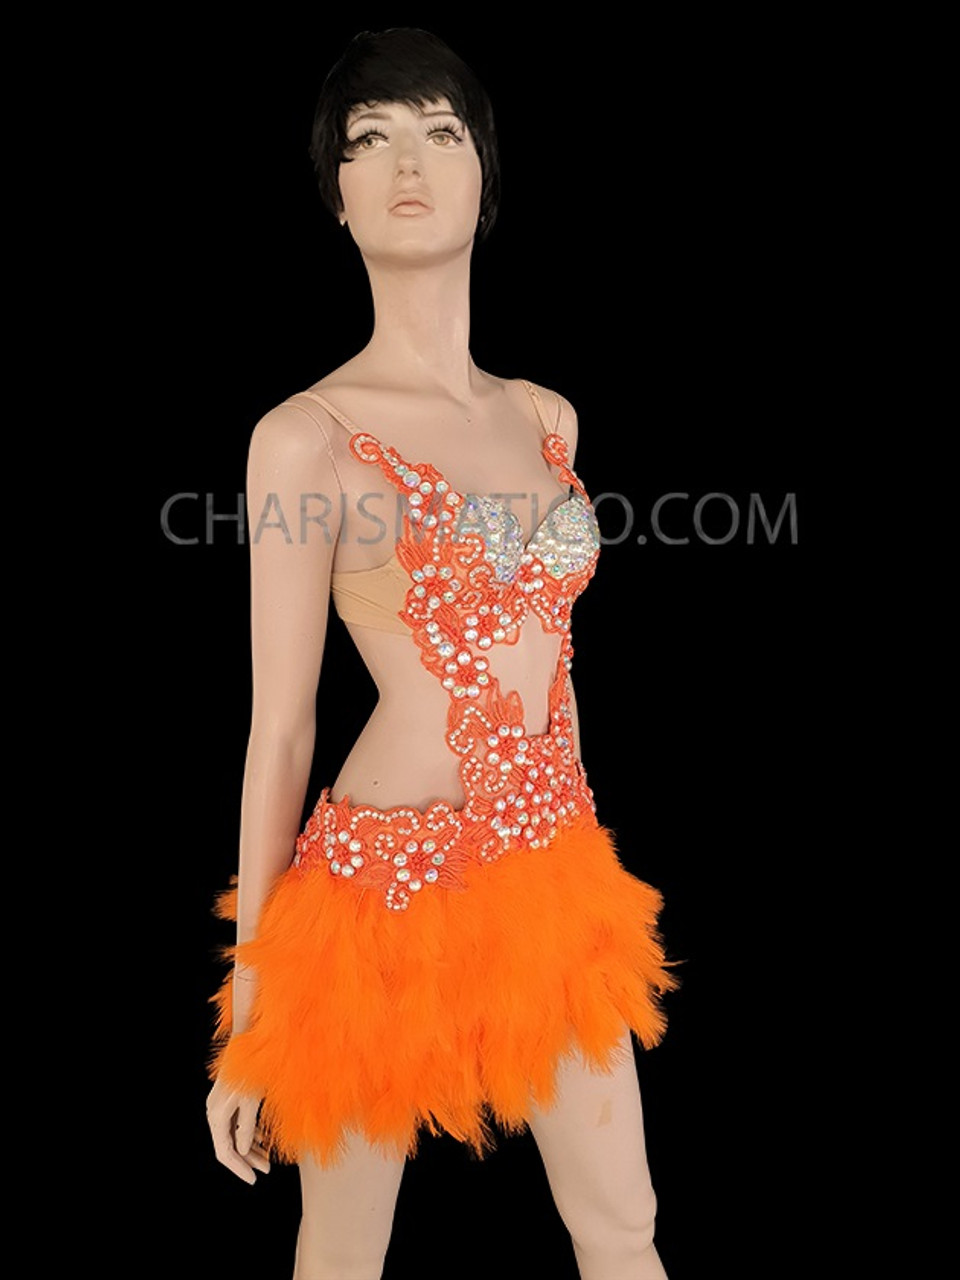 Fresh Blooming Orange Glittery Vibrant Diva Dance Dress